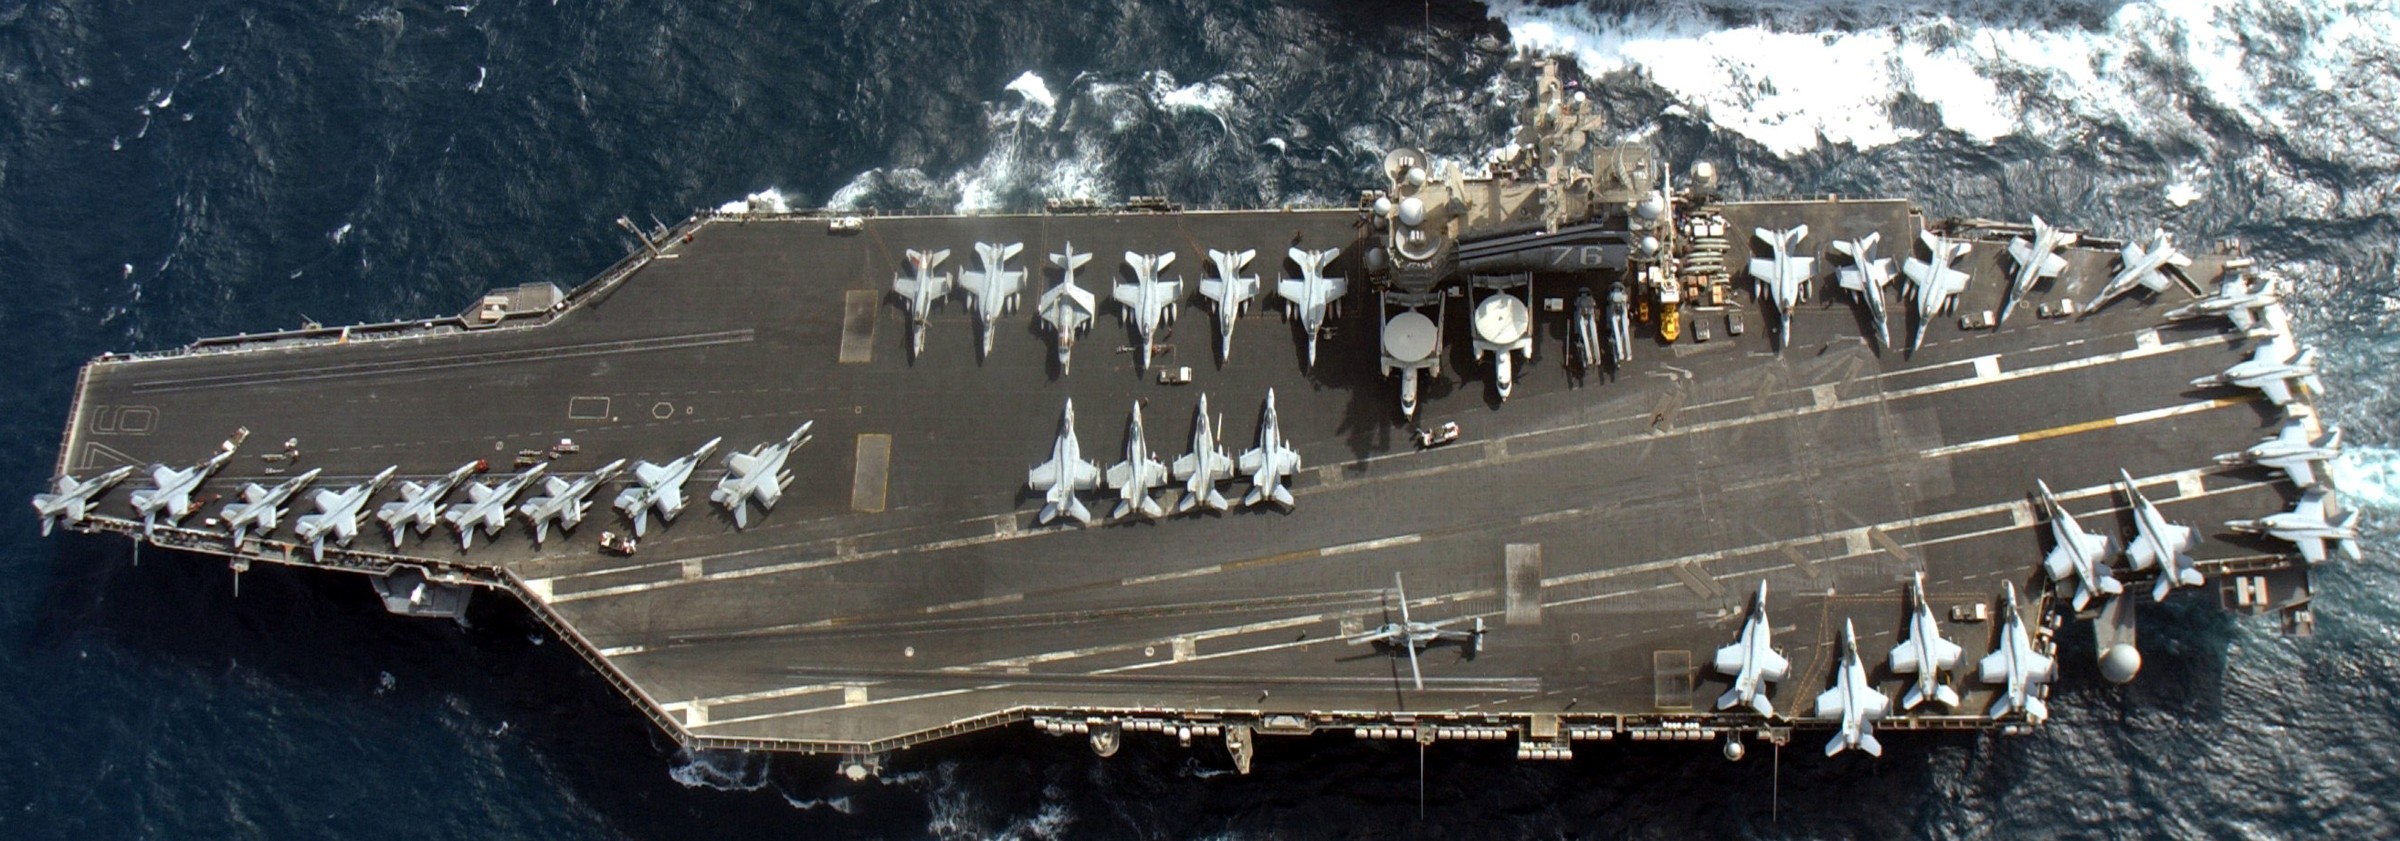 图鉴：“尼米兹”级航空母舰“里根”号展示舰载打击力量